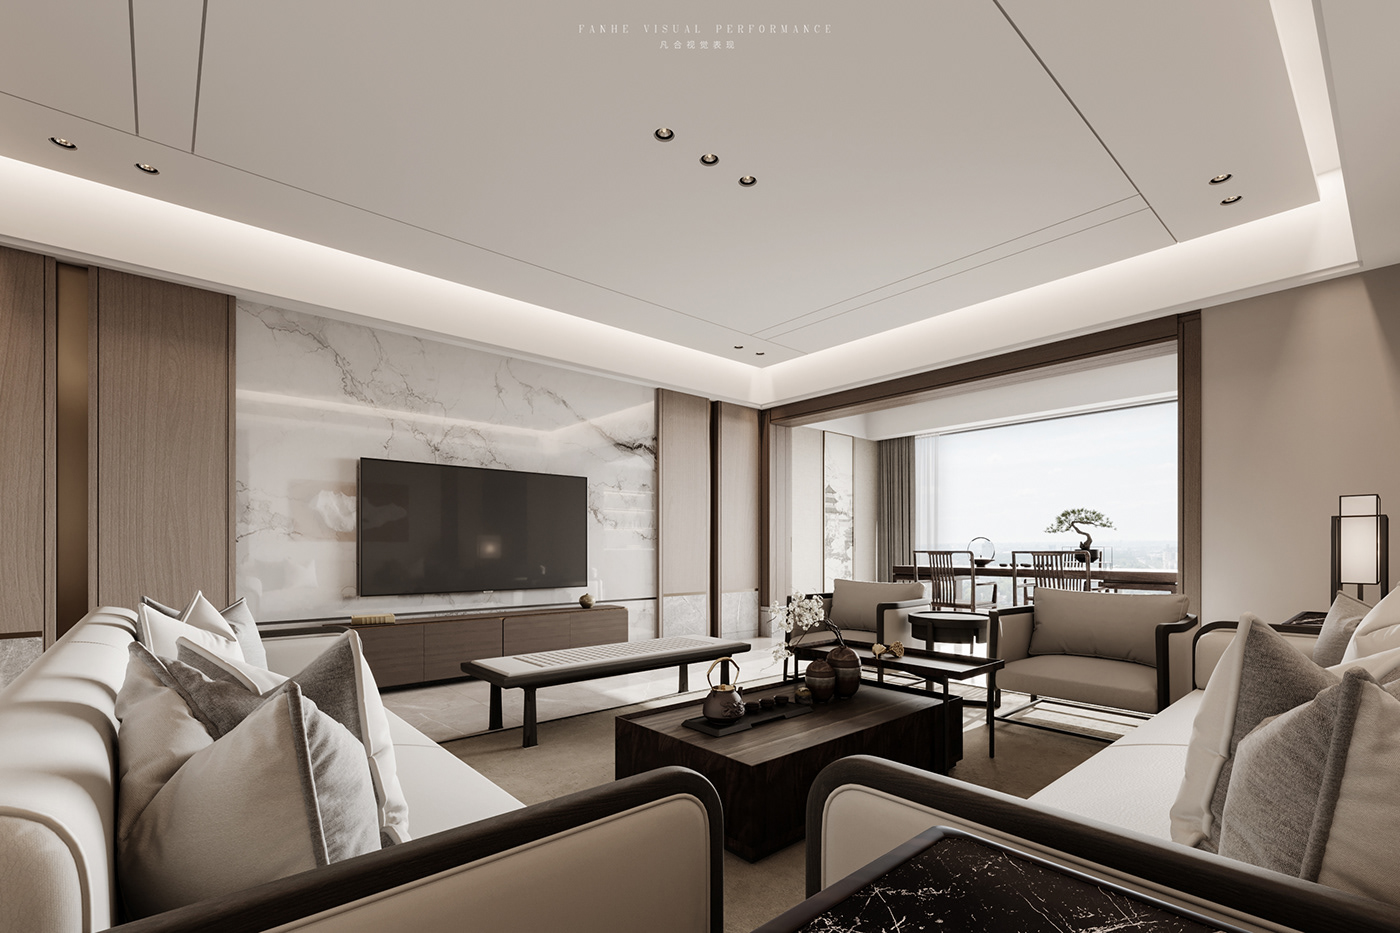 3ds max architecture CGI corona interior design  modern Render visualization vray